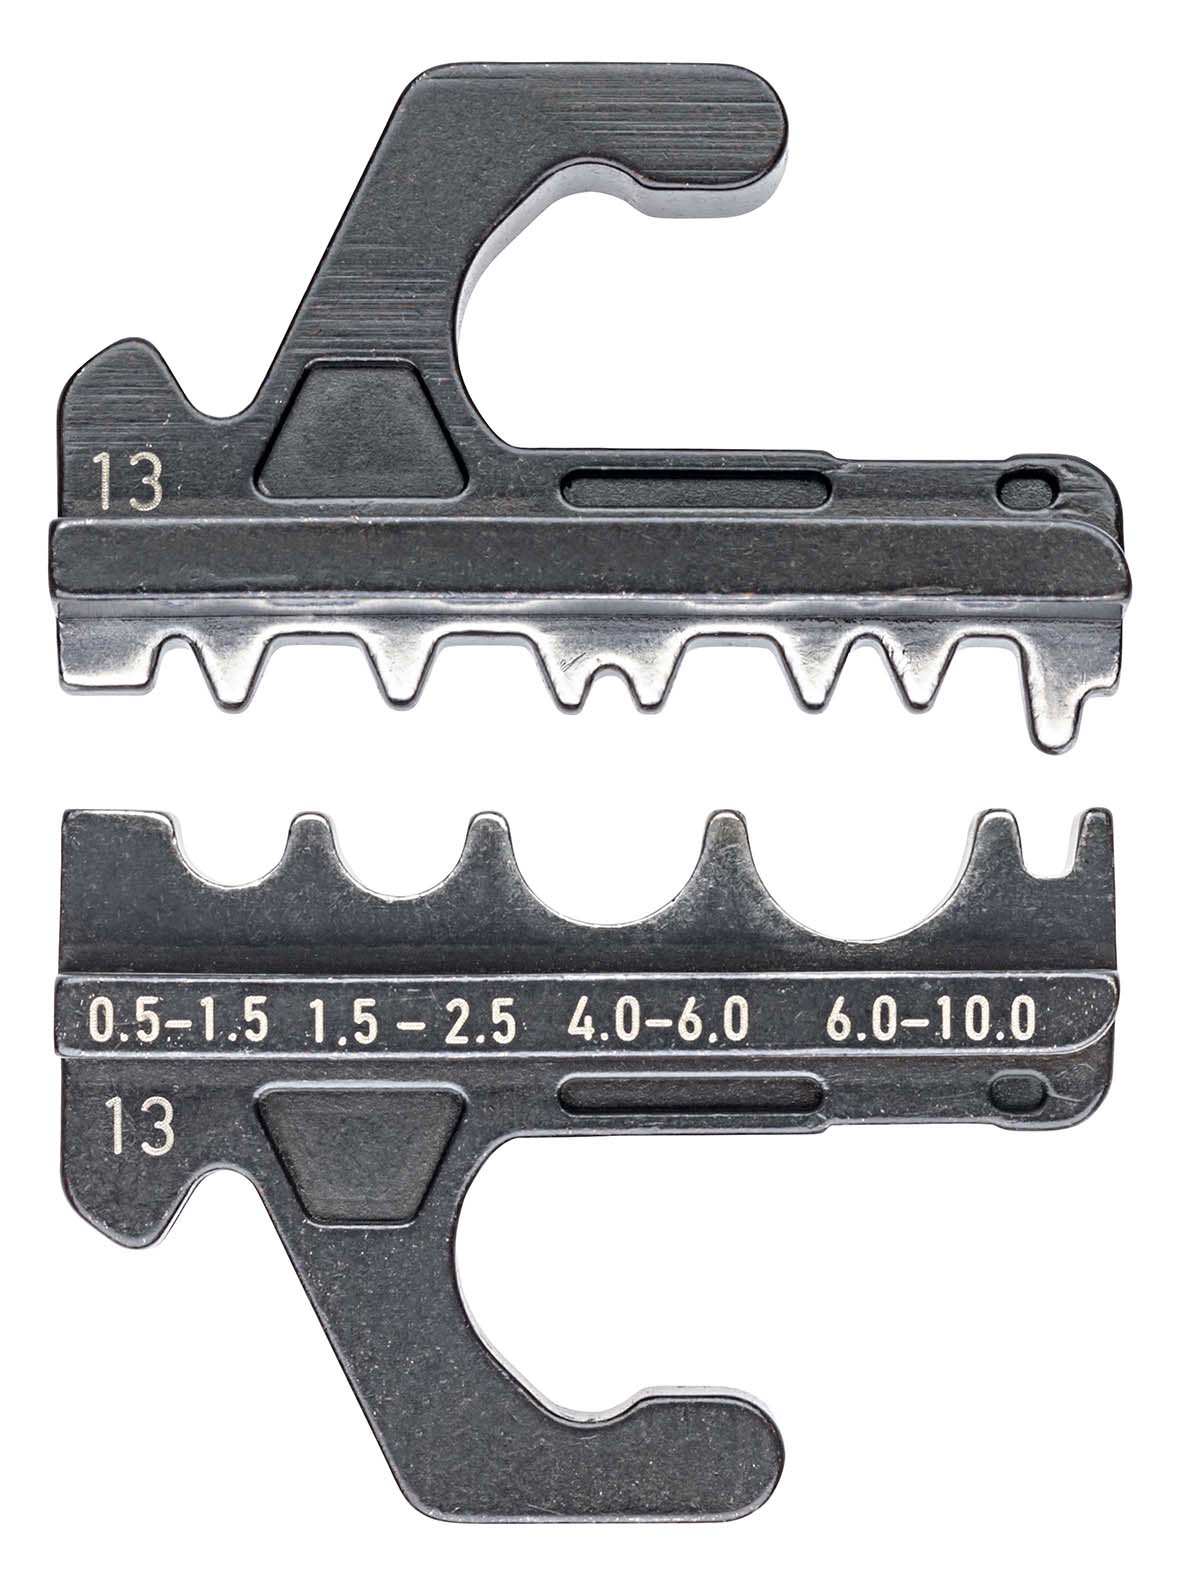 KNIPEX 97 39 13 Crimpeinsatz für unisolierte Quetsch-, Rohr- und Presskabelschuhe nach DIN 46234 und DIN 46235 sowie unisolierte Quetsch-, Stoß- und Pressverbinder nach DIN 46341 und DIN 46267